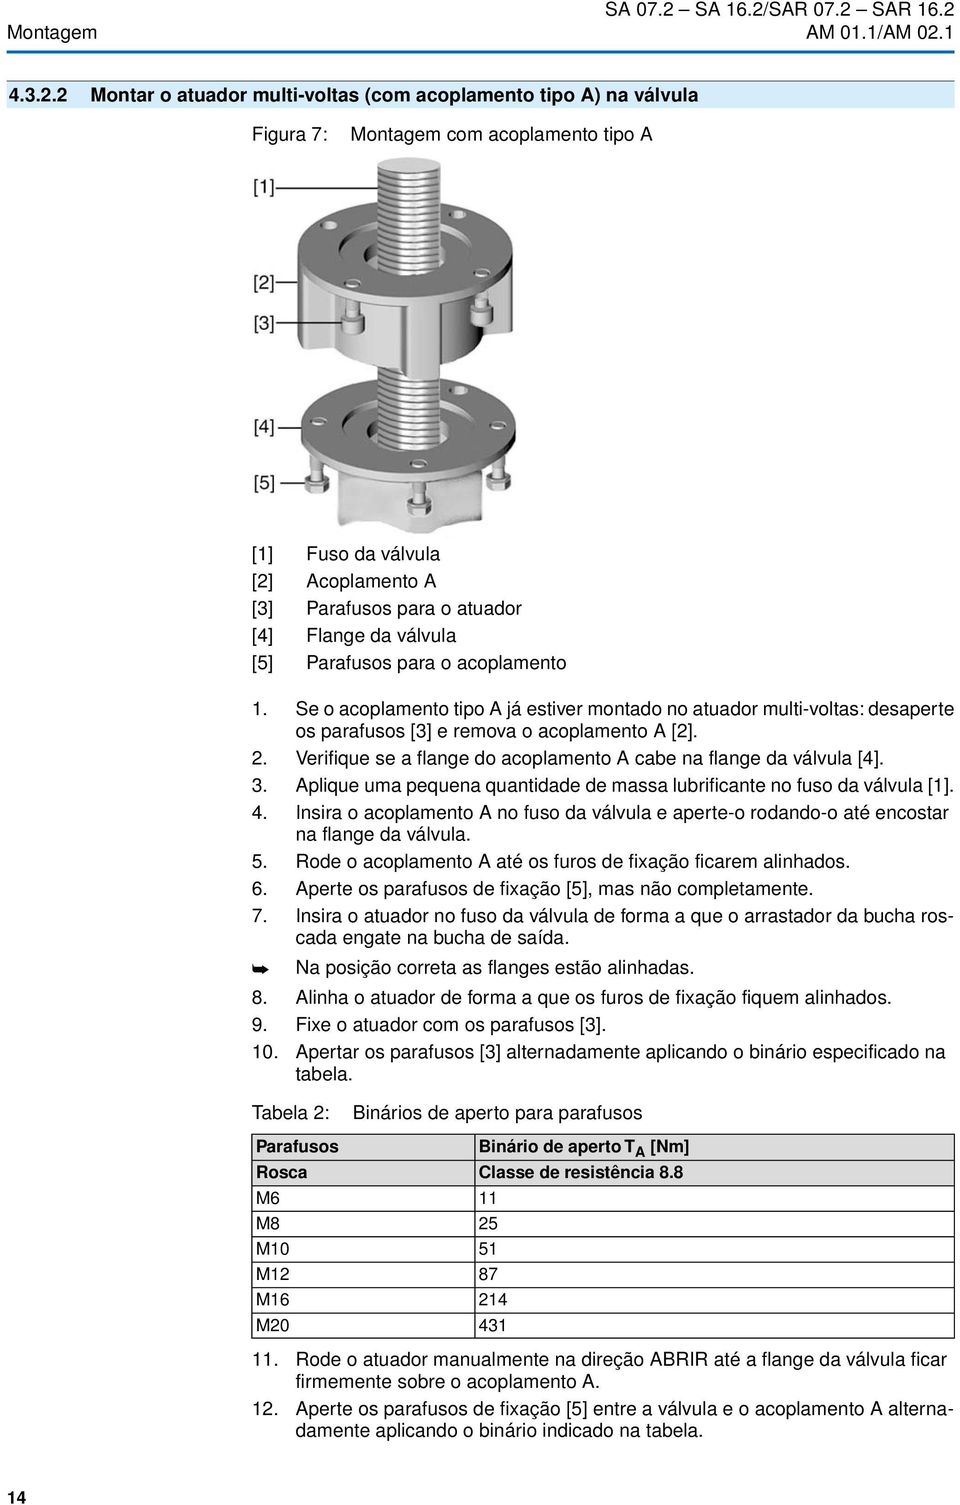 2 Montar o atuador multi-voltas (com acoplamento tipo A) na válvula Figura 7: Montagem com acoplamento tipo A [1] Fuso da válvula [2] Acoplamento A [3] Parafusos para o atuador [4] Flange da válvula